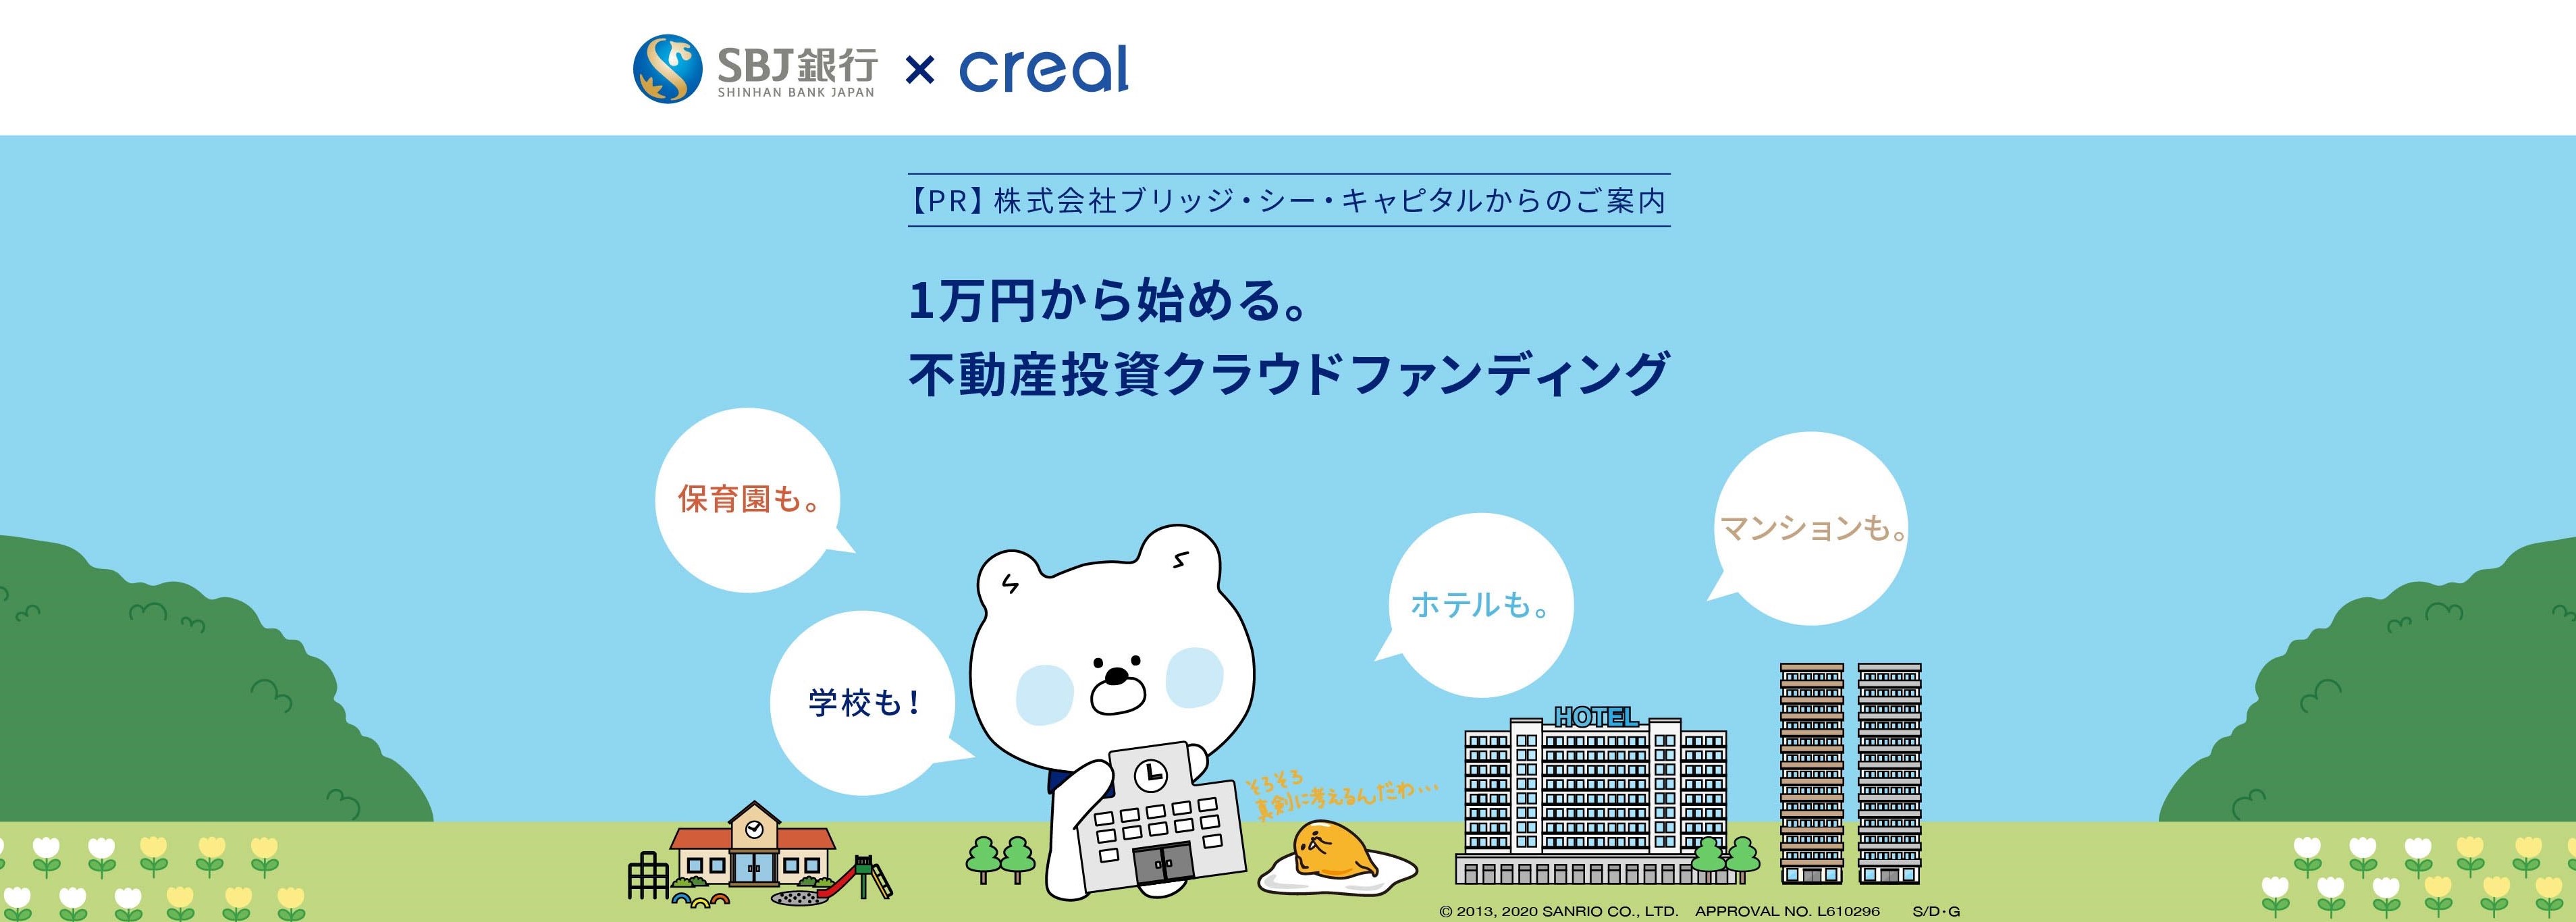 「SBJ銀行×CREAL」提携キャンペーン実施のお知らせ 投資額に応じて最大5万円をキャッシュバック！